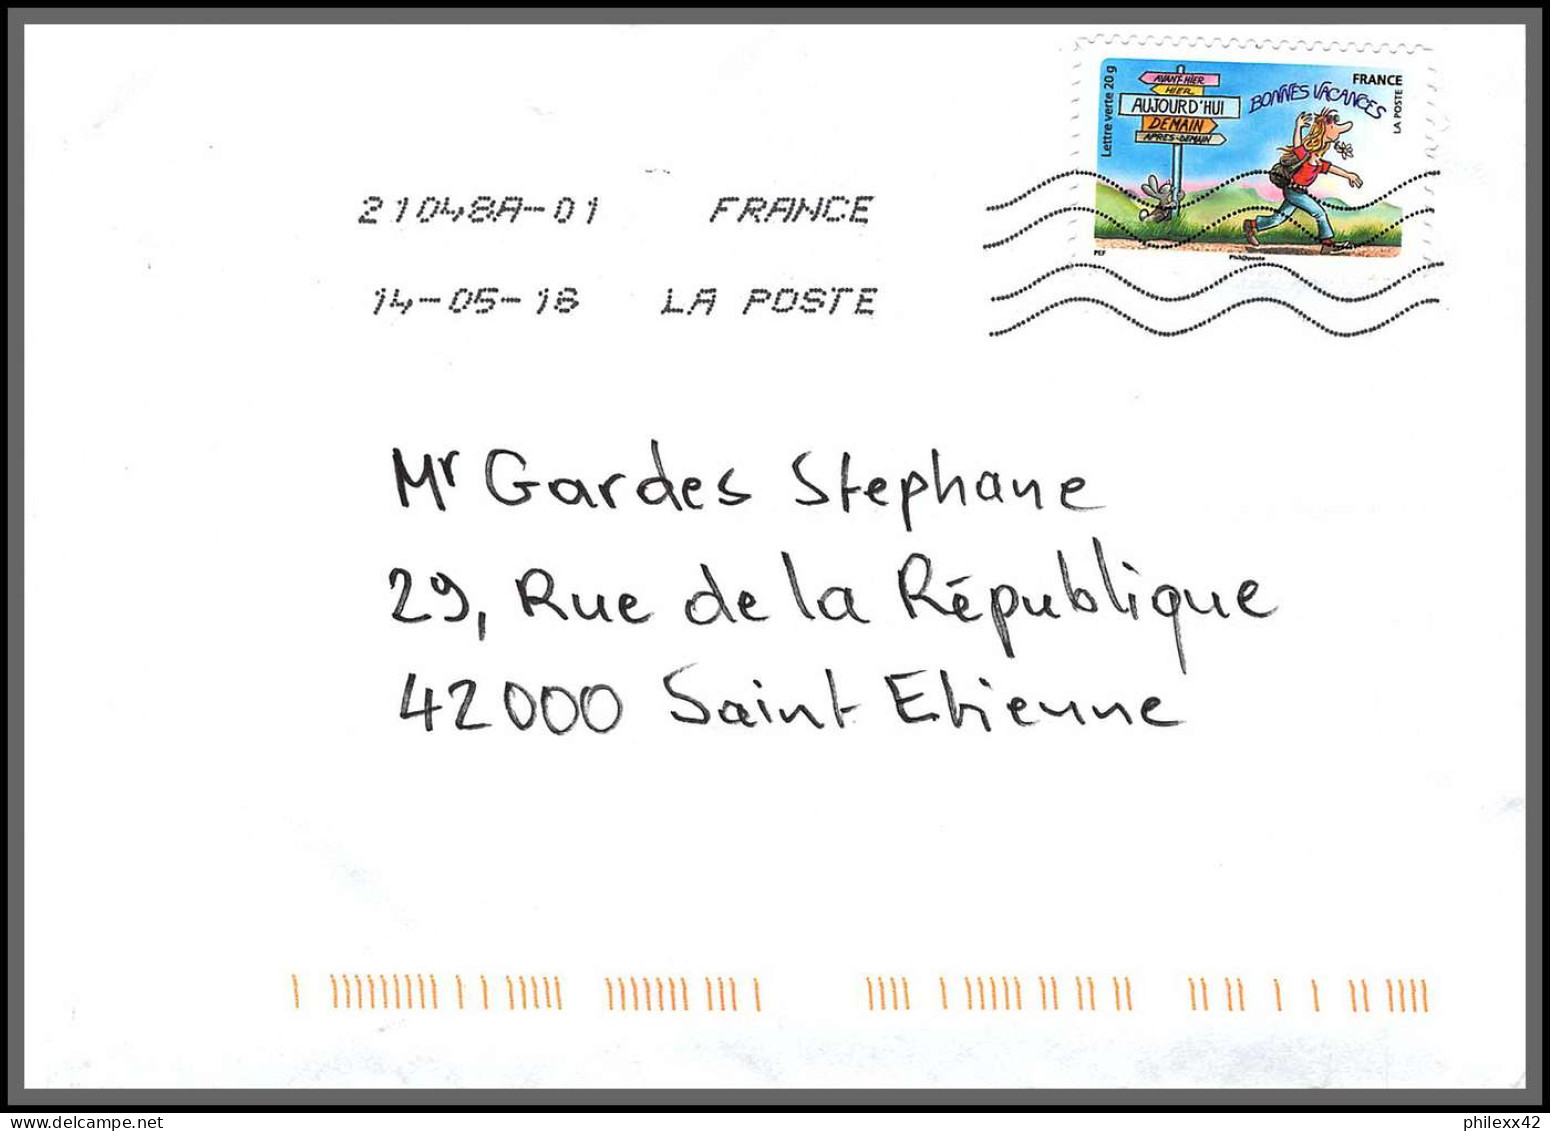 95903 - lot de 15 courriers lettres enveloppes de l'année 2018 divers affranchissements en EUROS